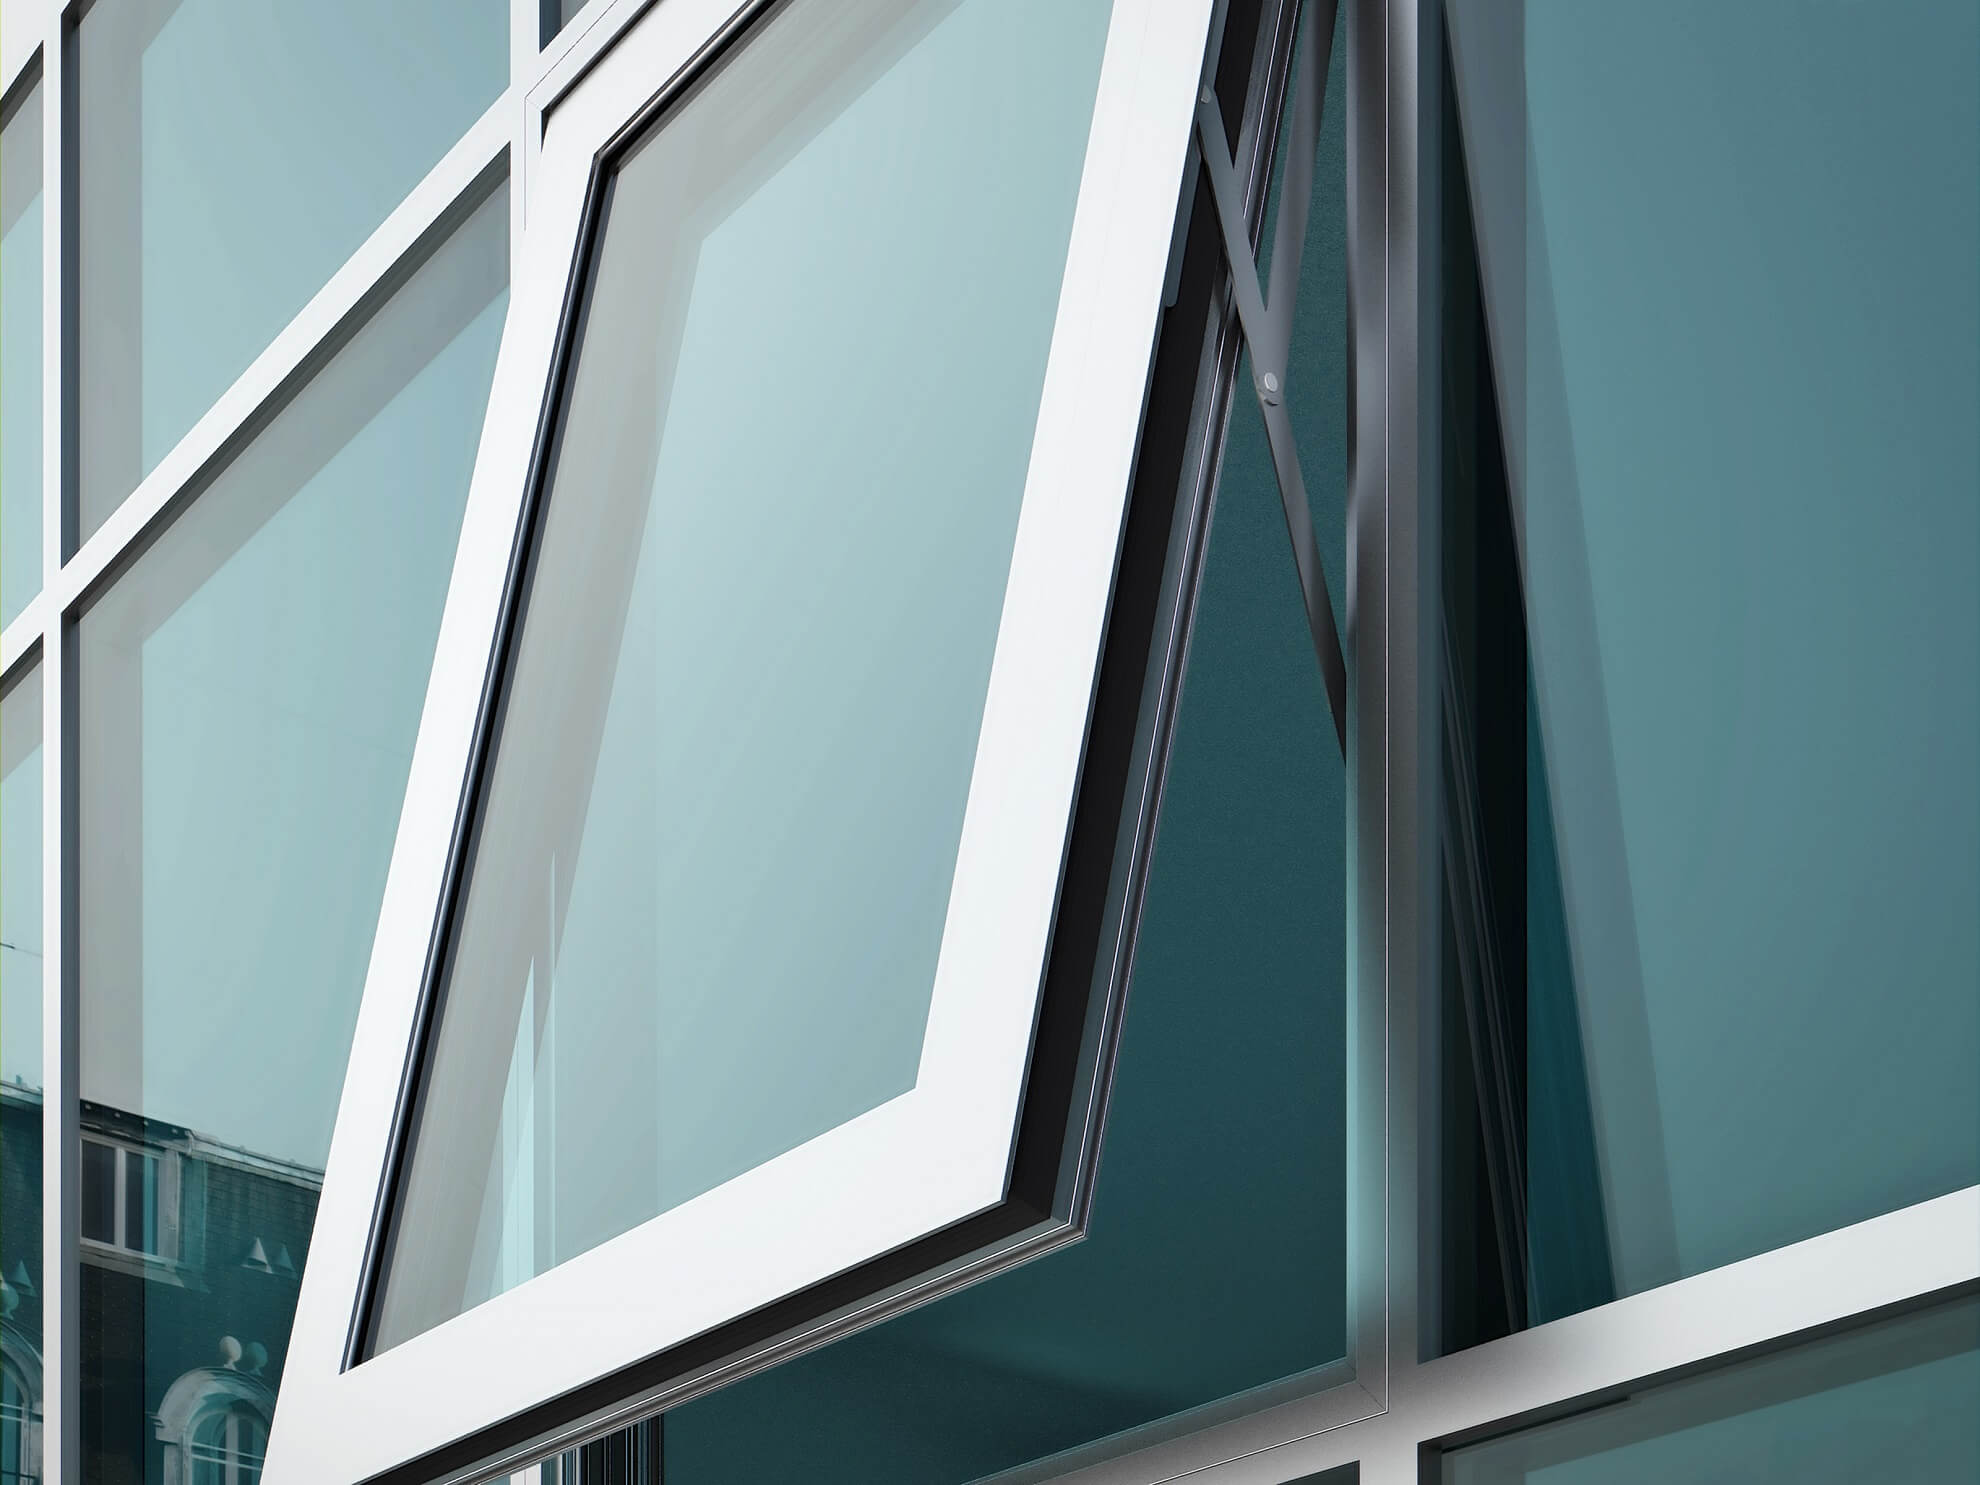 Decalu openout - window fasade - Aluminium windows and doors manufacturer UK - Profal Aluminium